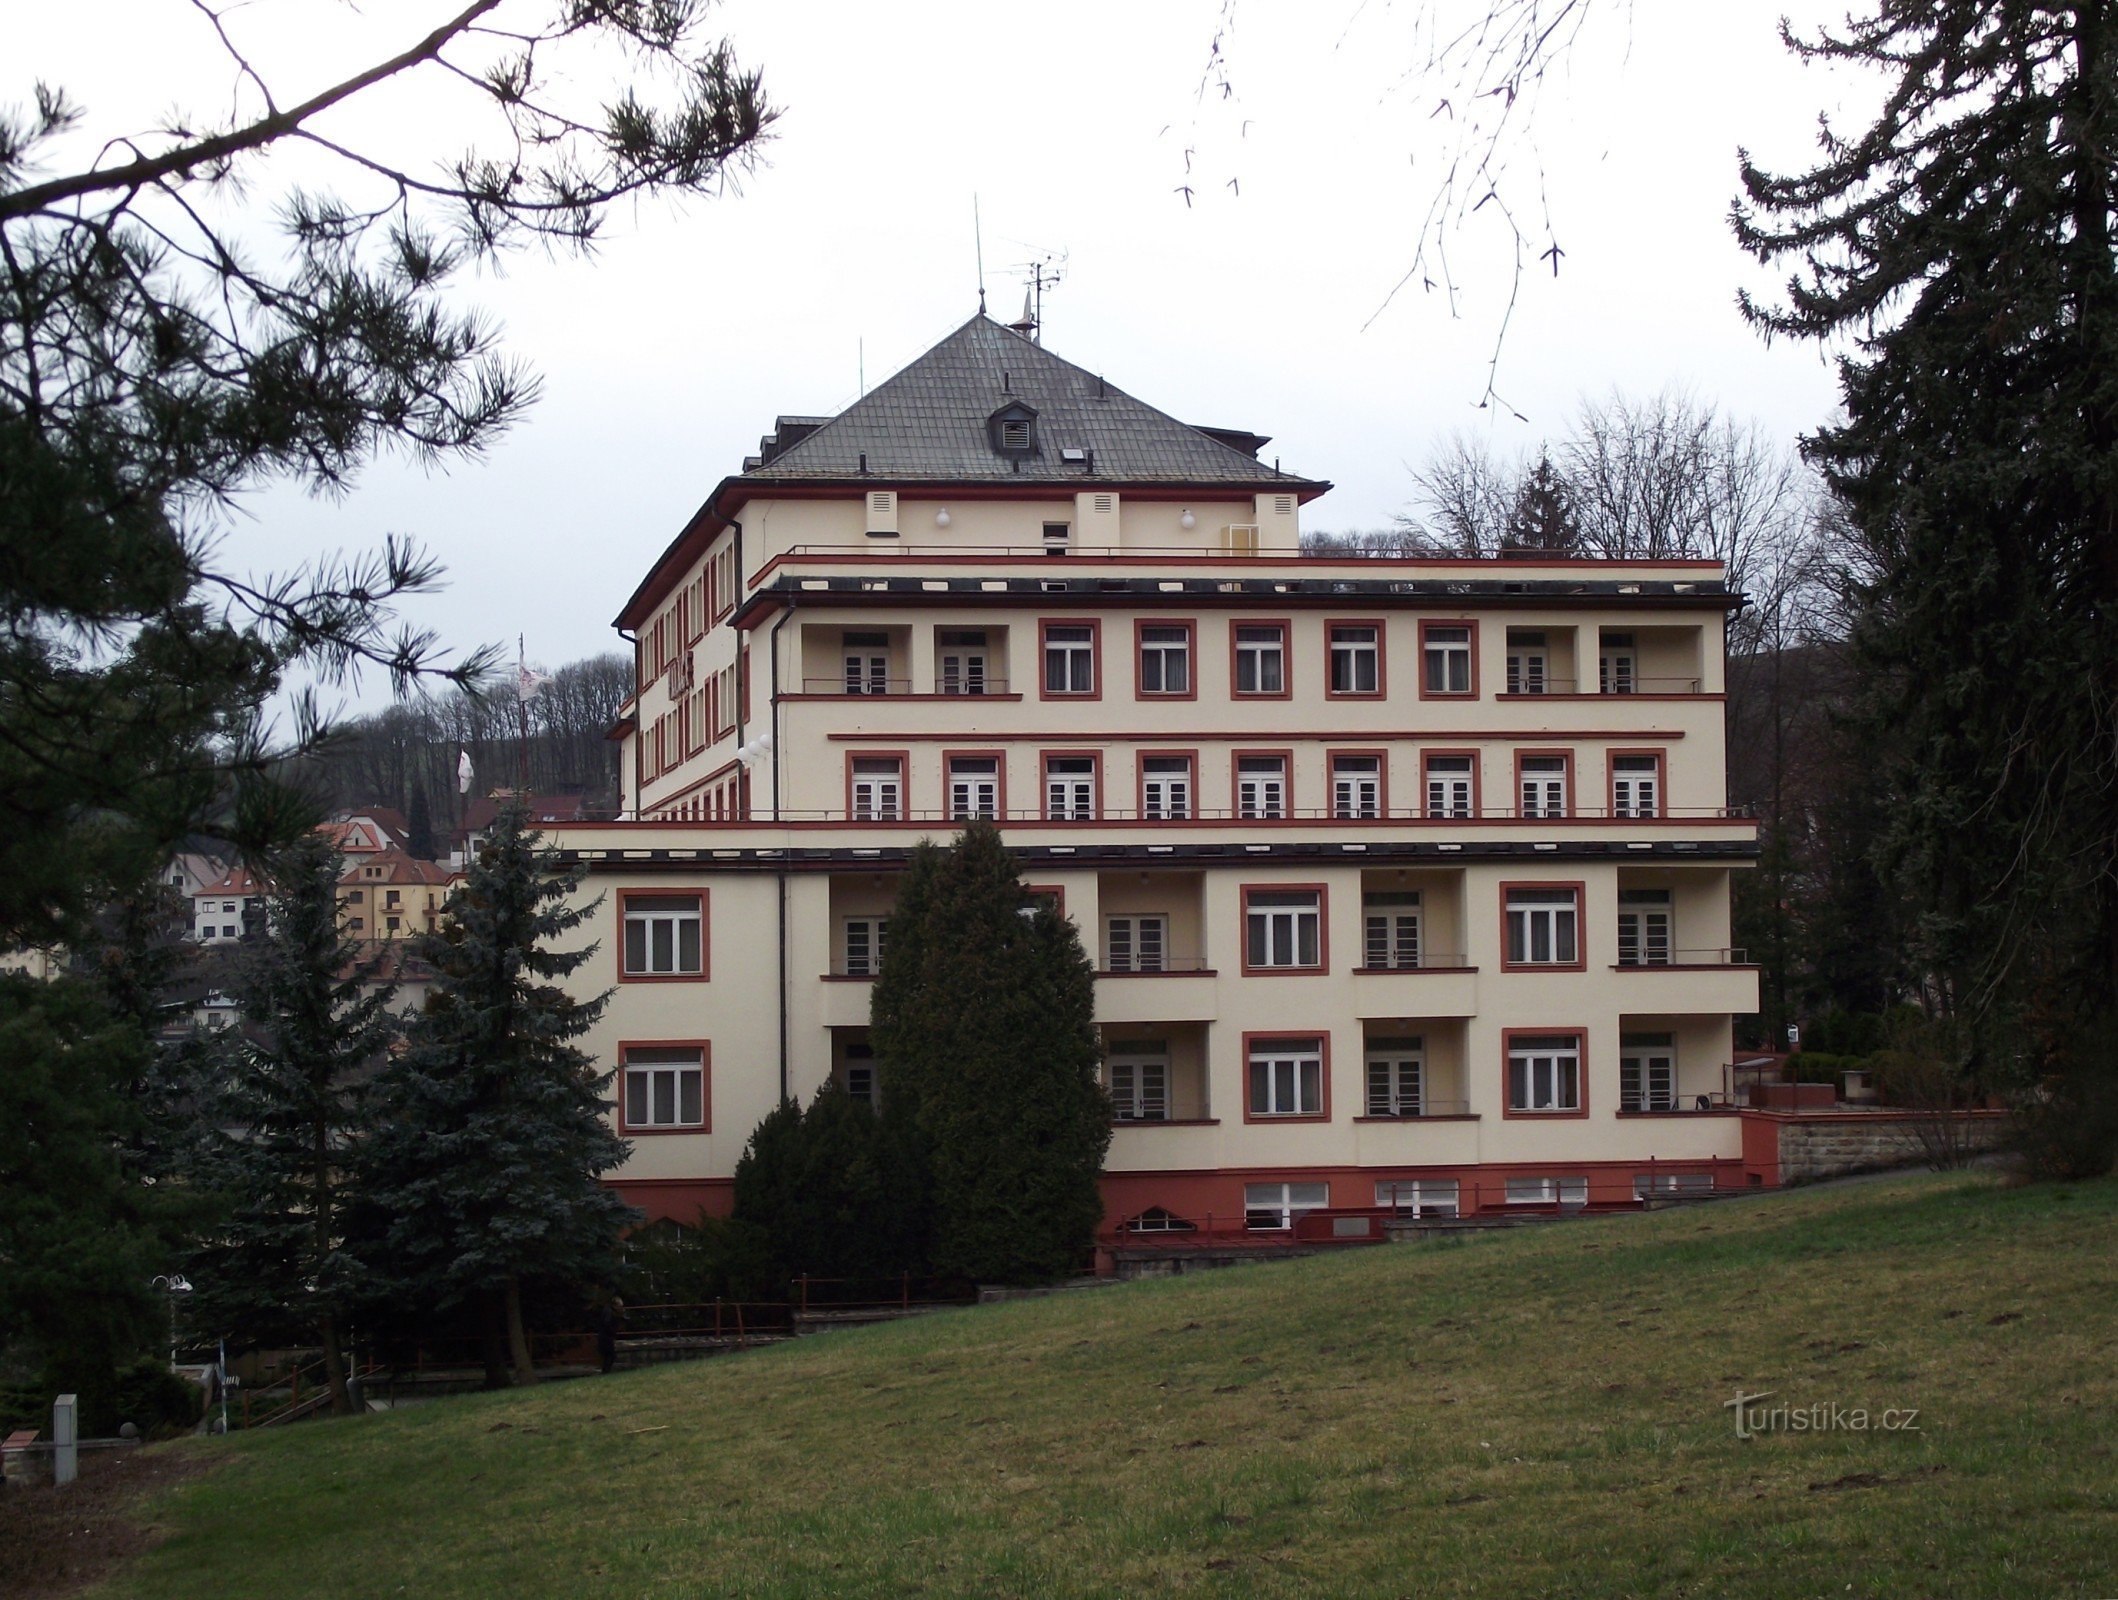 Лугачовице – Palace Hotel (Palace Hotel Drtílek)